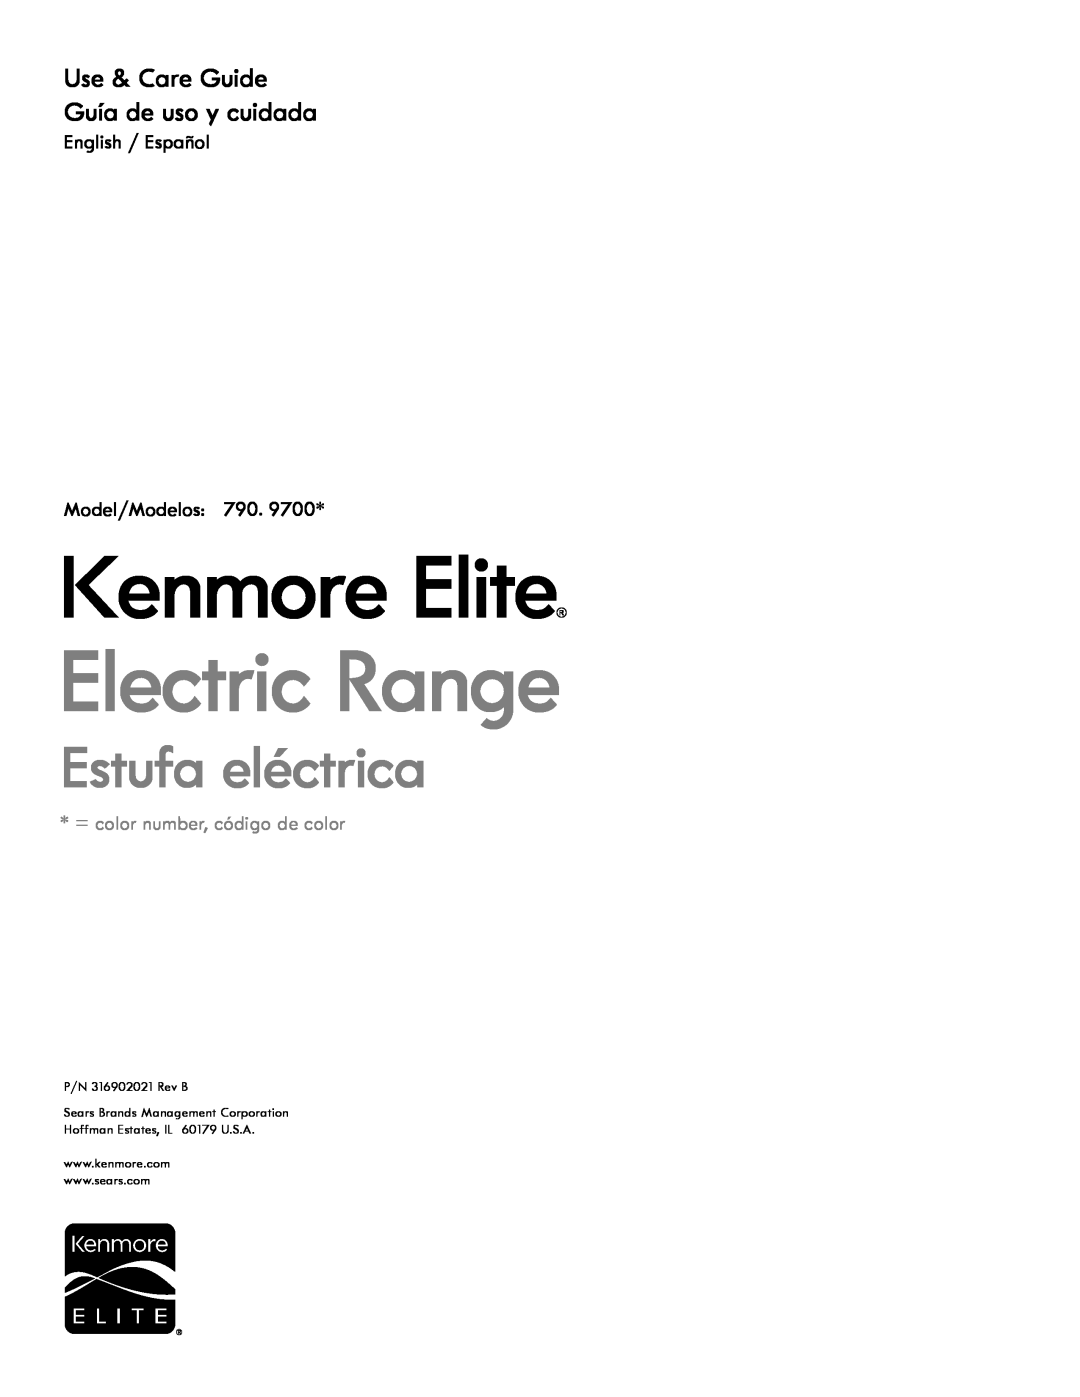 Kenmore 4272 manual = Color number, ntJmero de color, Electric Cooktop, PARRILLA DE COClNAR ELECTRICA, Use & Care Guide 